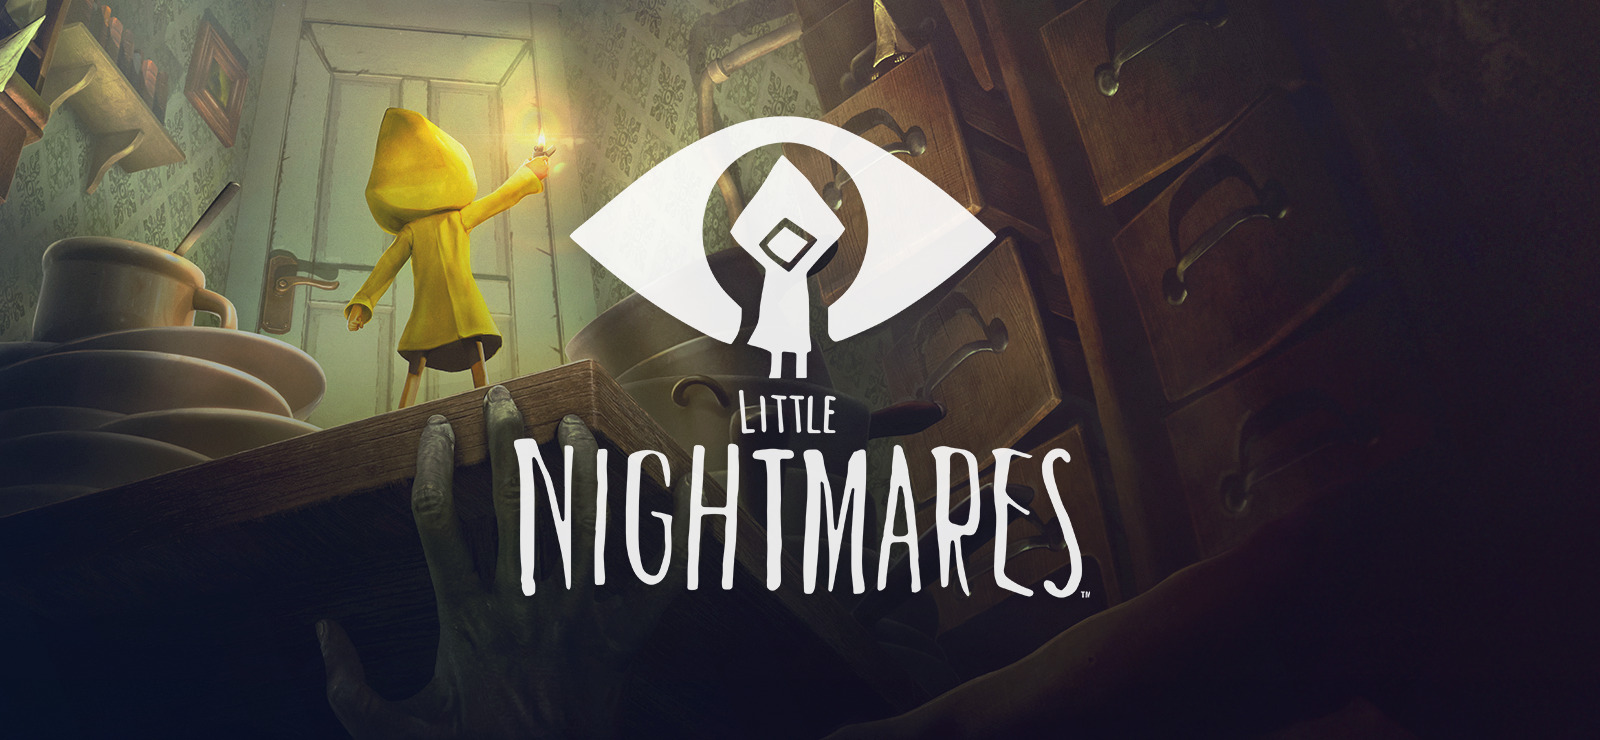 LITTLE NIGHTMARES  Official Website (EN)